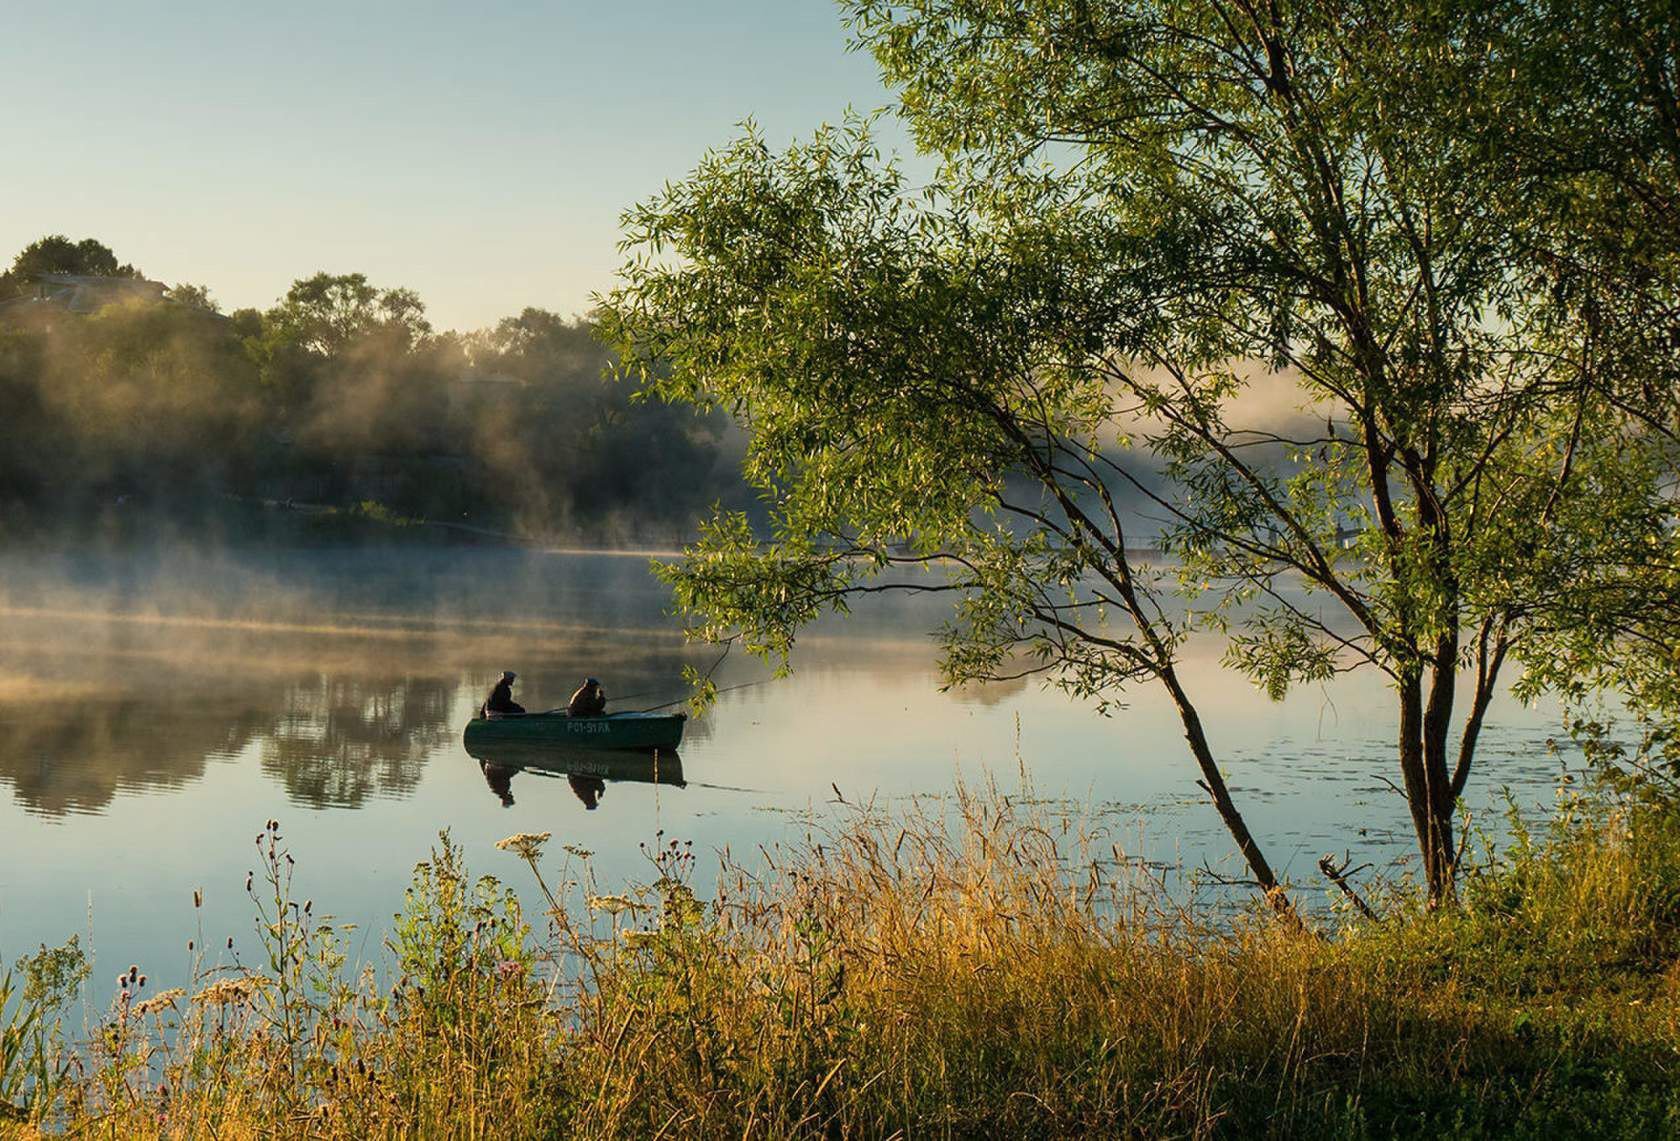 Летним утром мы направляемся на рыбалку природа. Река Байгора. Владимирской области на пруду «у Филиппыча». Озеро Спиринское. Ахтохаллэн река.